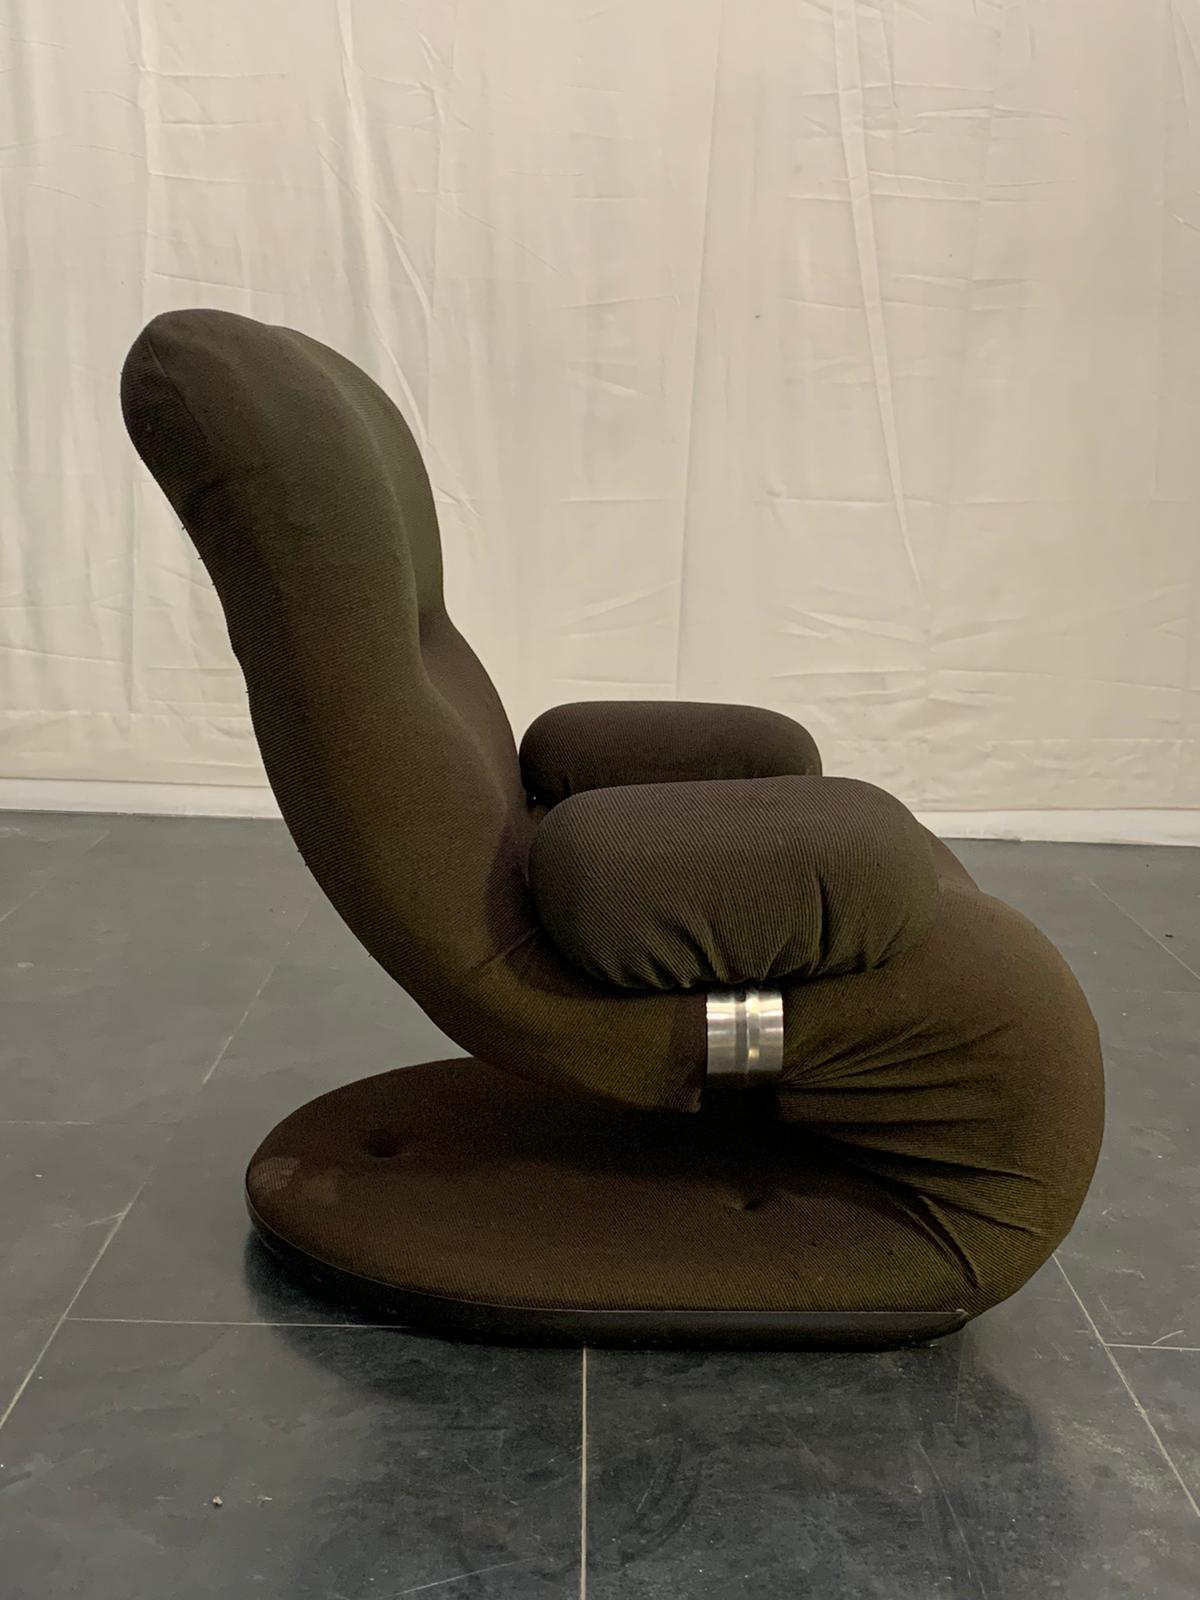 Girasole 4P Sessel, hergestellt in den 1970er Jahren. Polsterung aus grünem Stretch-Stoff und Schaumgummi-Pad.
Die Verpackung mit Luftpolsterfolie und Kartonagen ist inbegriffen. Wenn die hölzerne Verpackung benötigt wird (begast Kisten oder